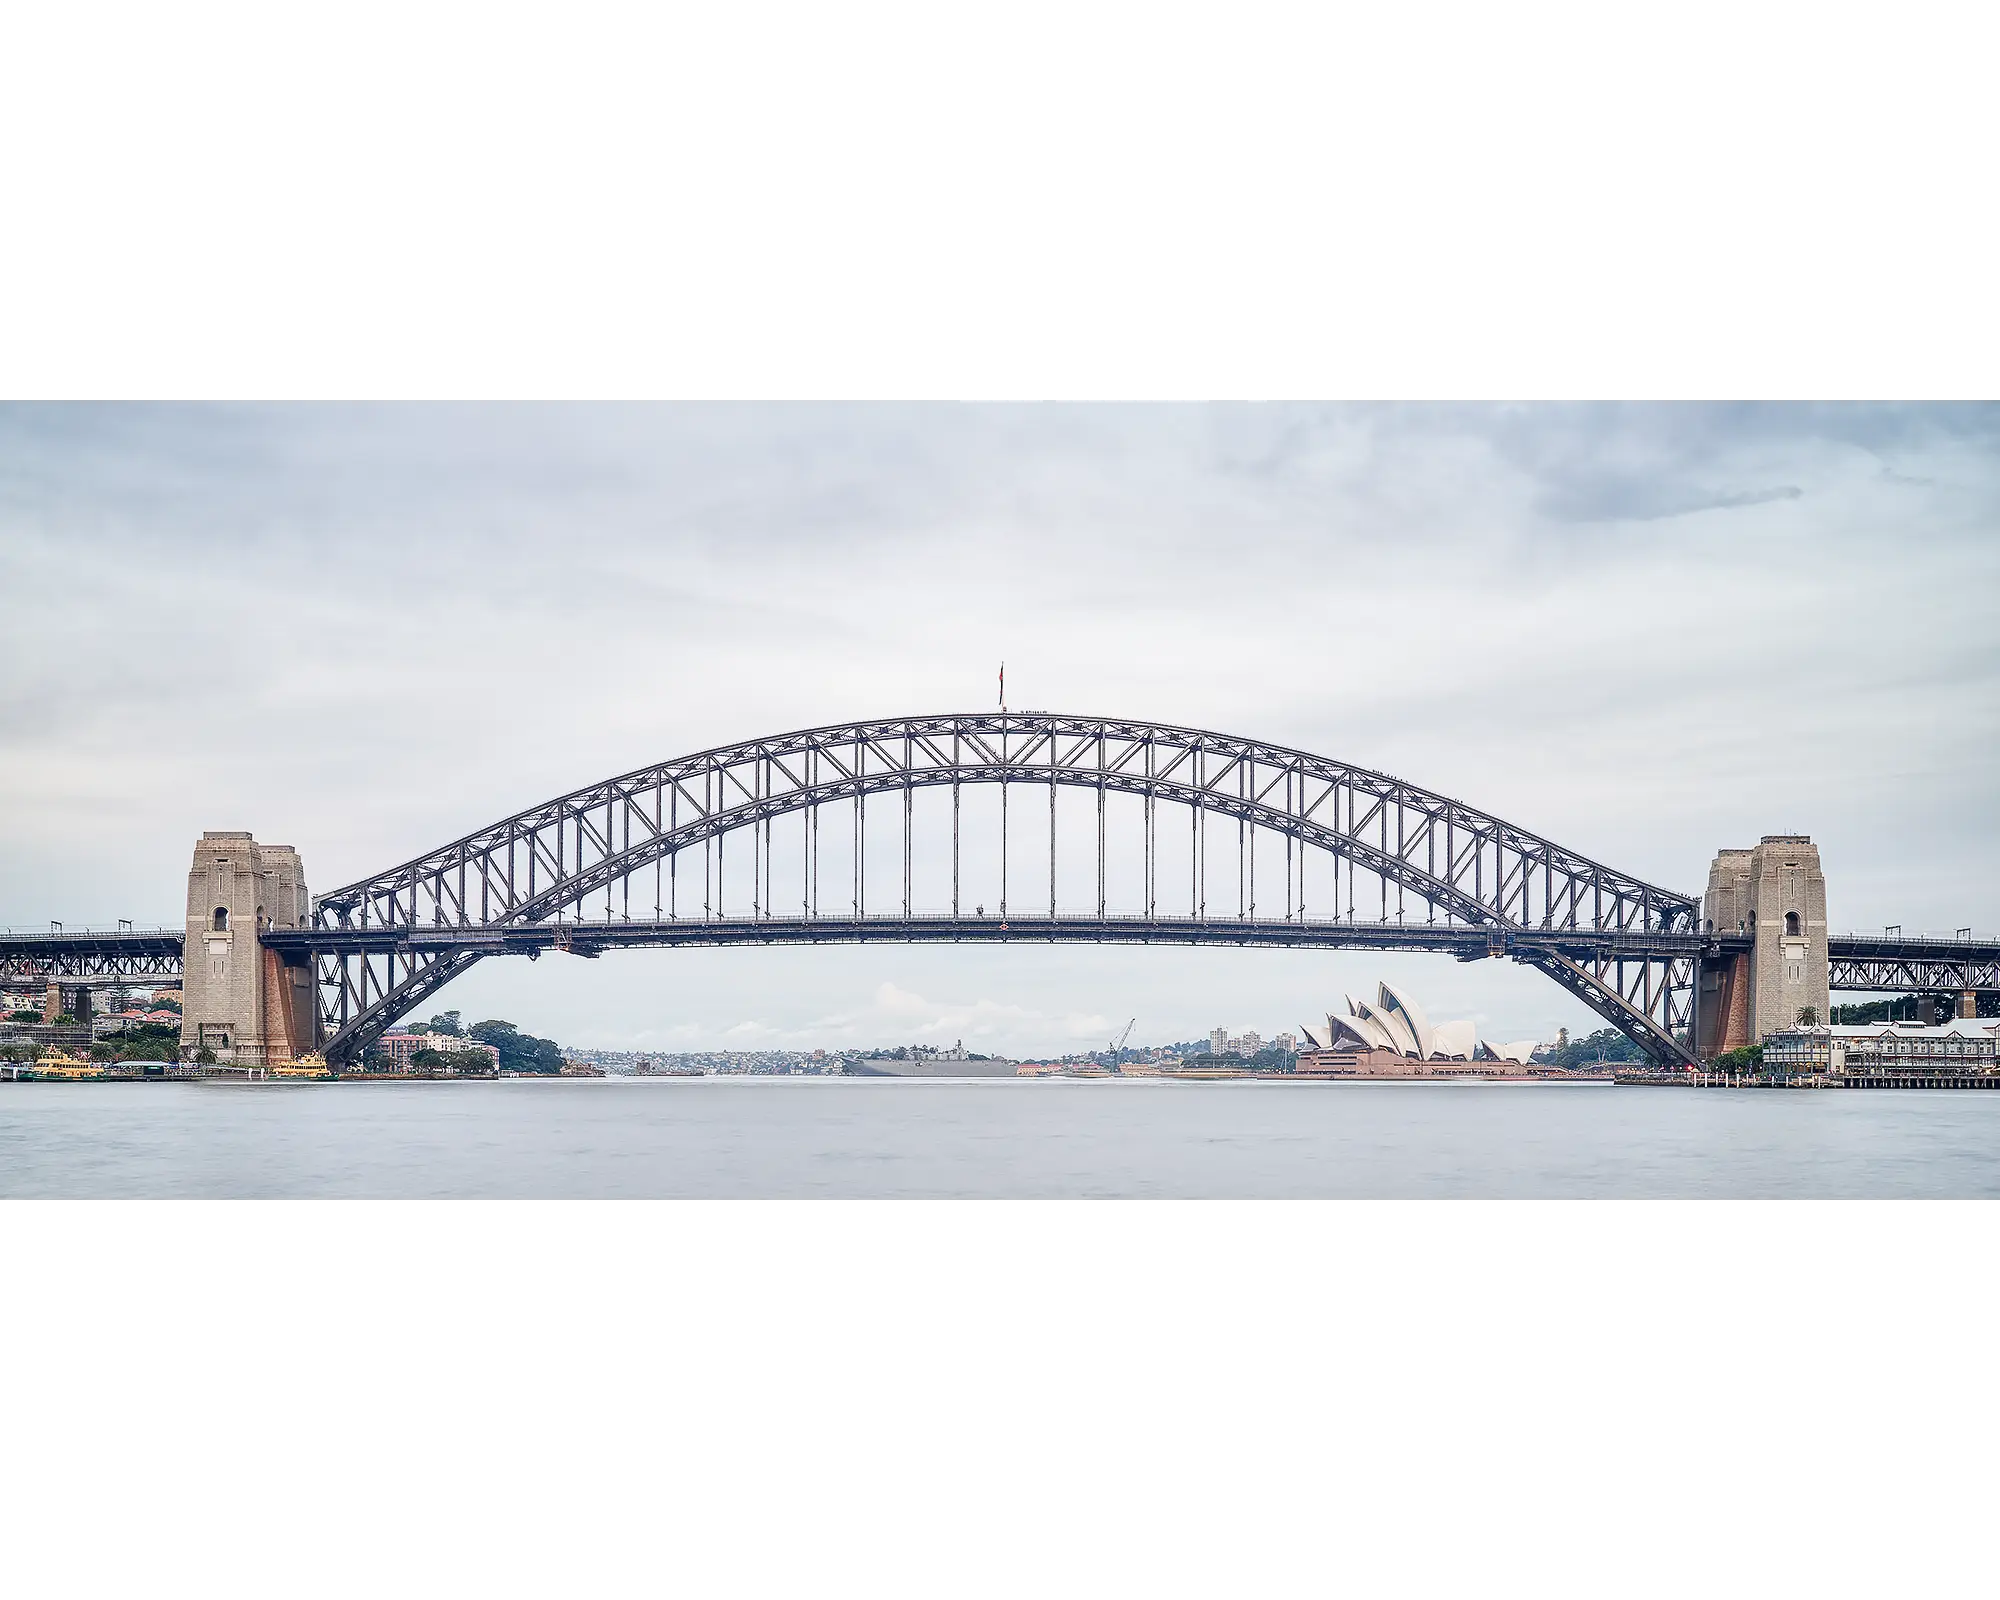 Sydney Harbour Bridge - The Coat Hanger